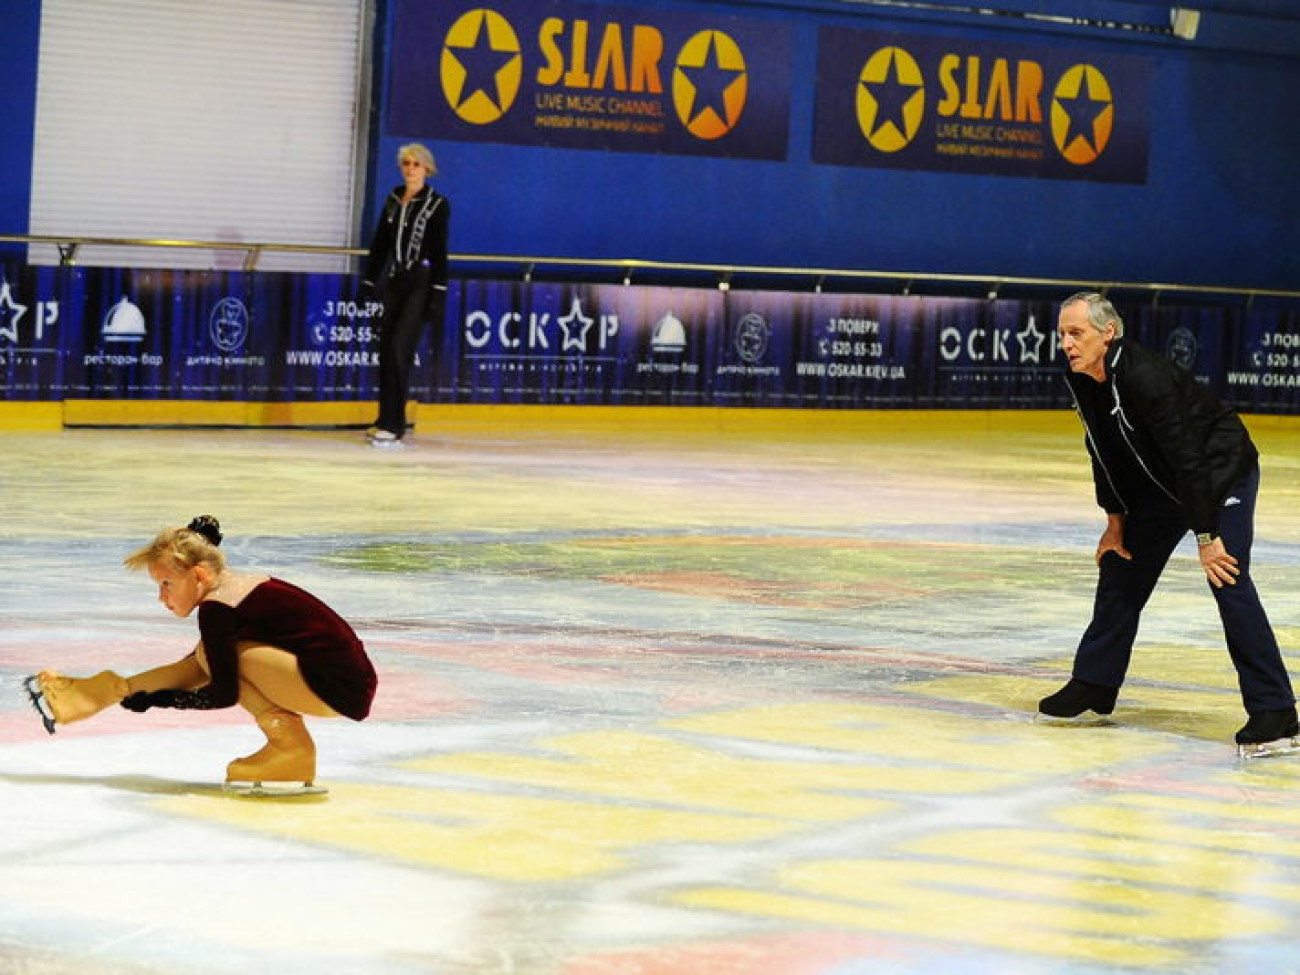 Игорь Бобрин и Наталья Бестемьянова учили киевских детей кататься на льду